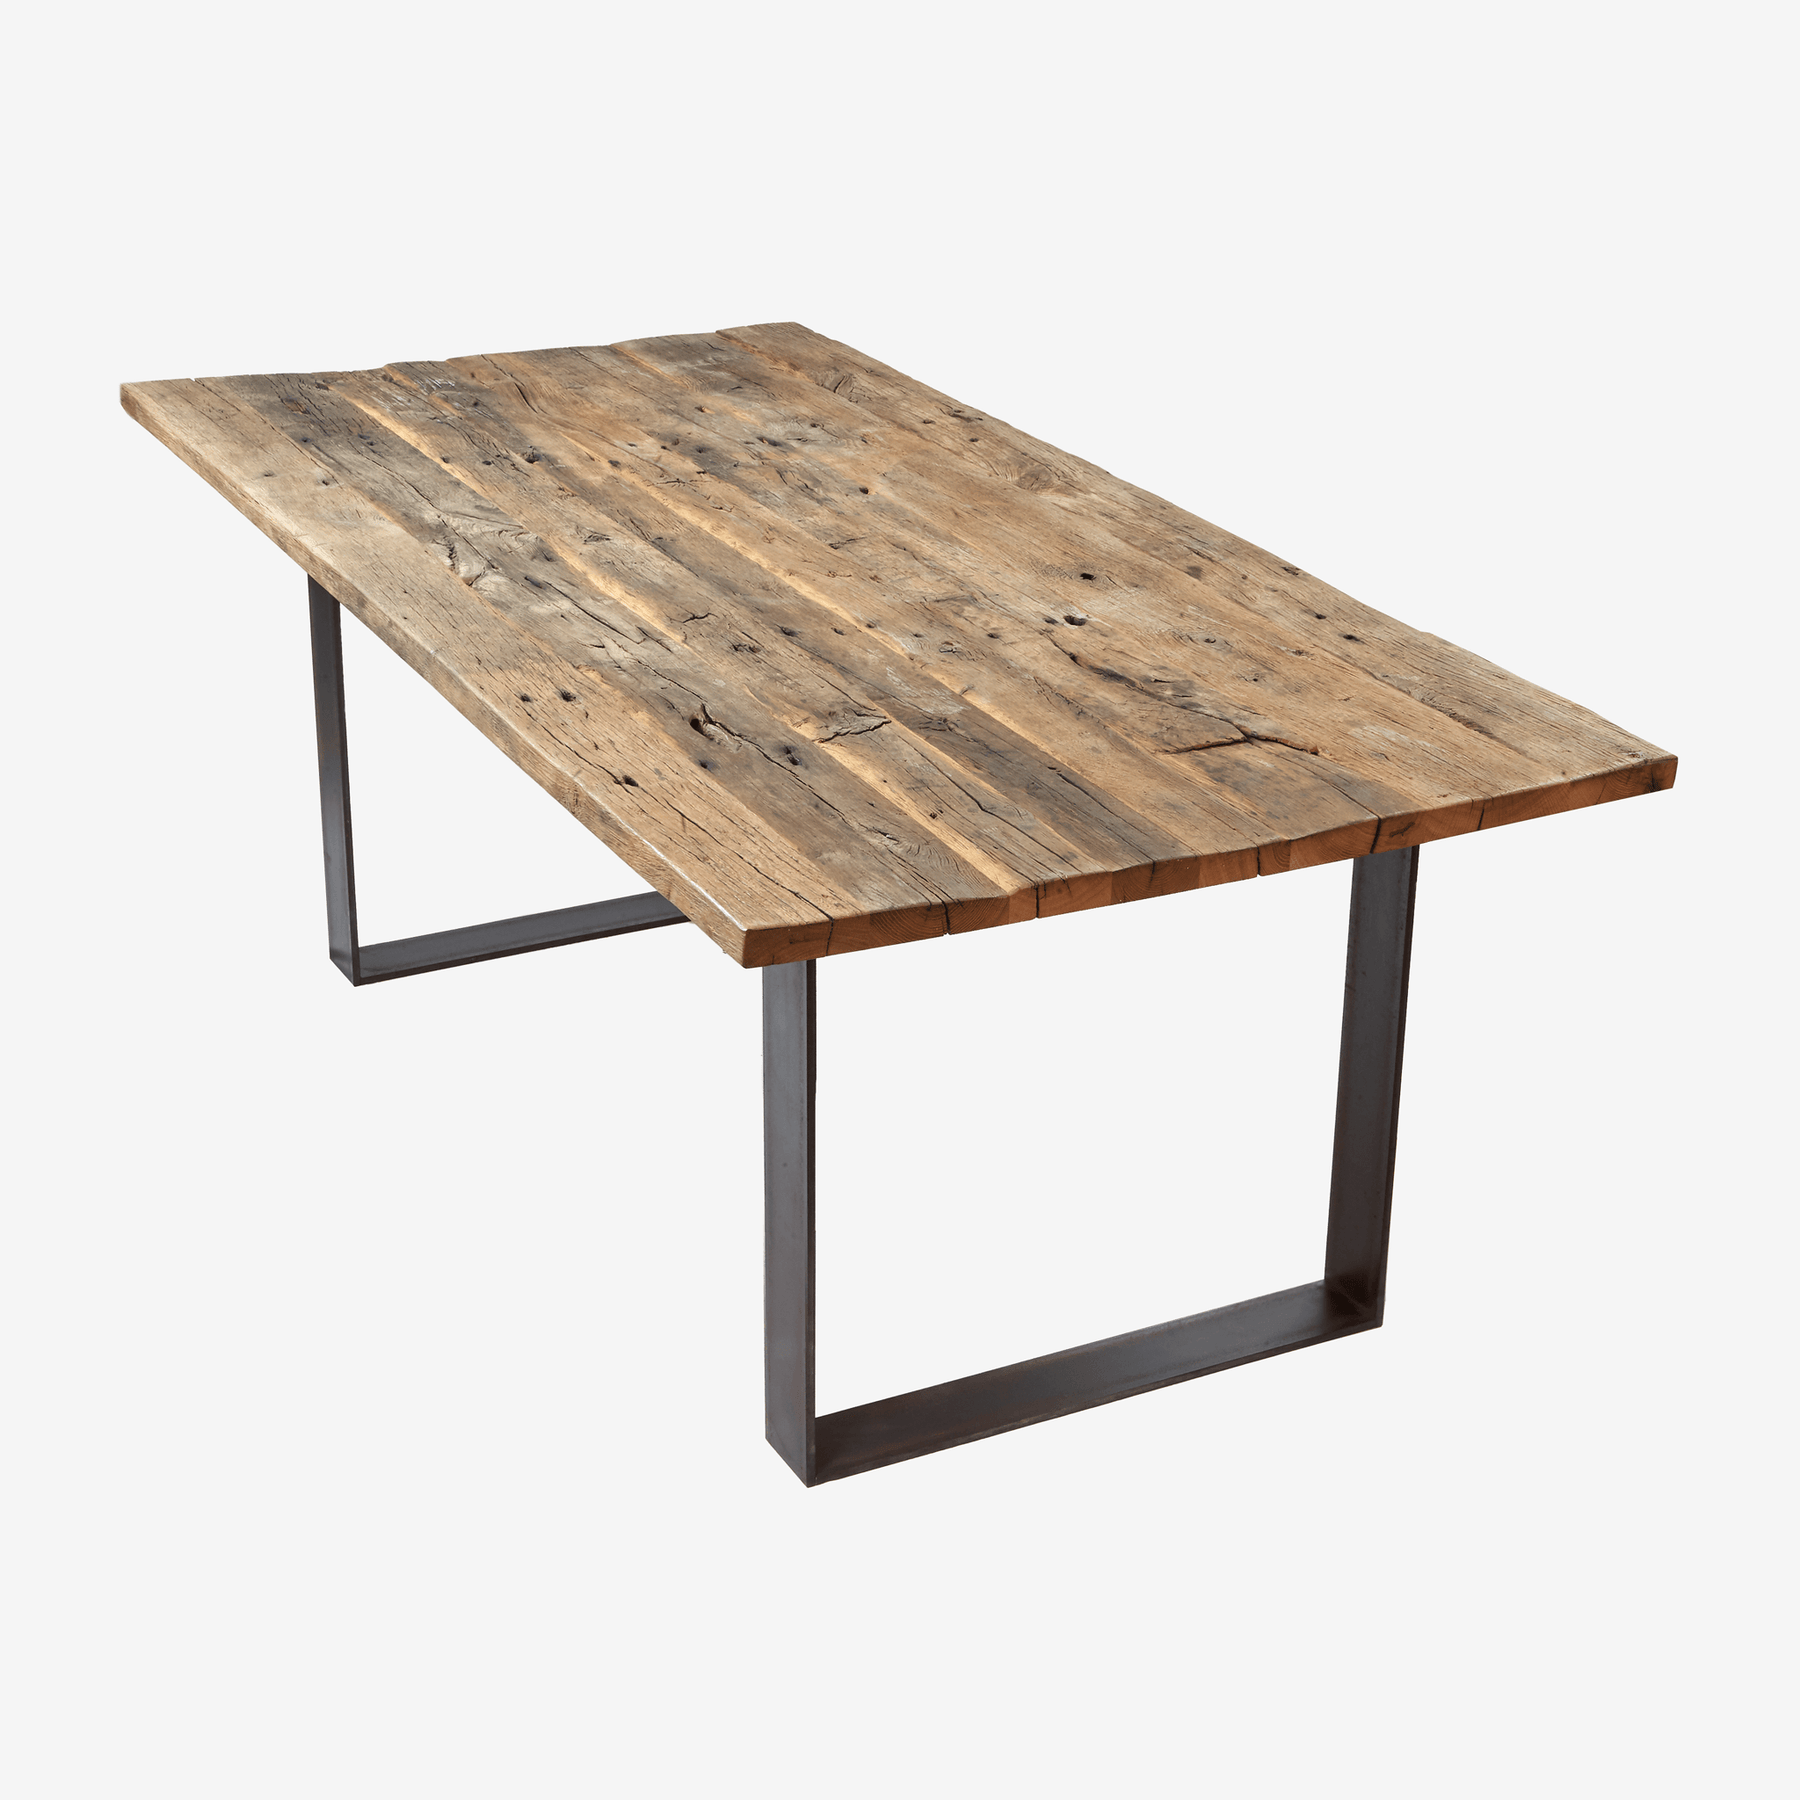 Aufgebauter Tisch aus Altholz mit originaler Oberfläche und zwei Rohstahl-Frames als Fußgestell